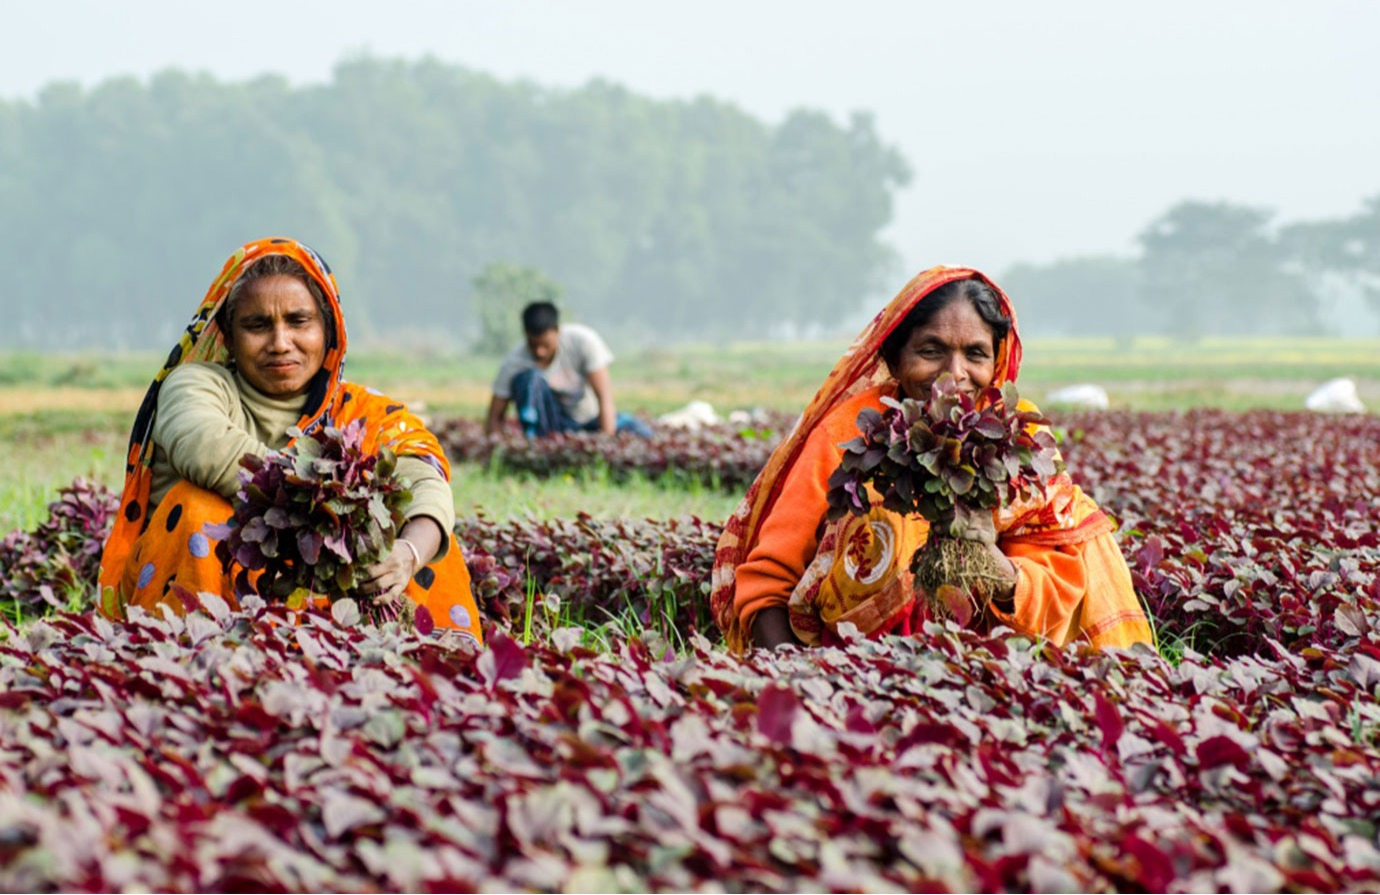 Indicador 5.a.1 de los ODS - Igualdad de derechos de las mujeres a la tenencia de tierras agrícolas